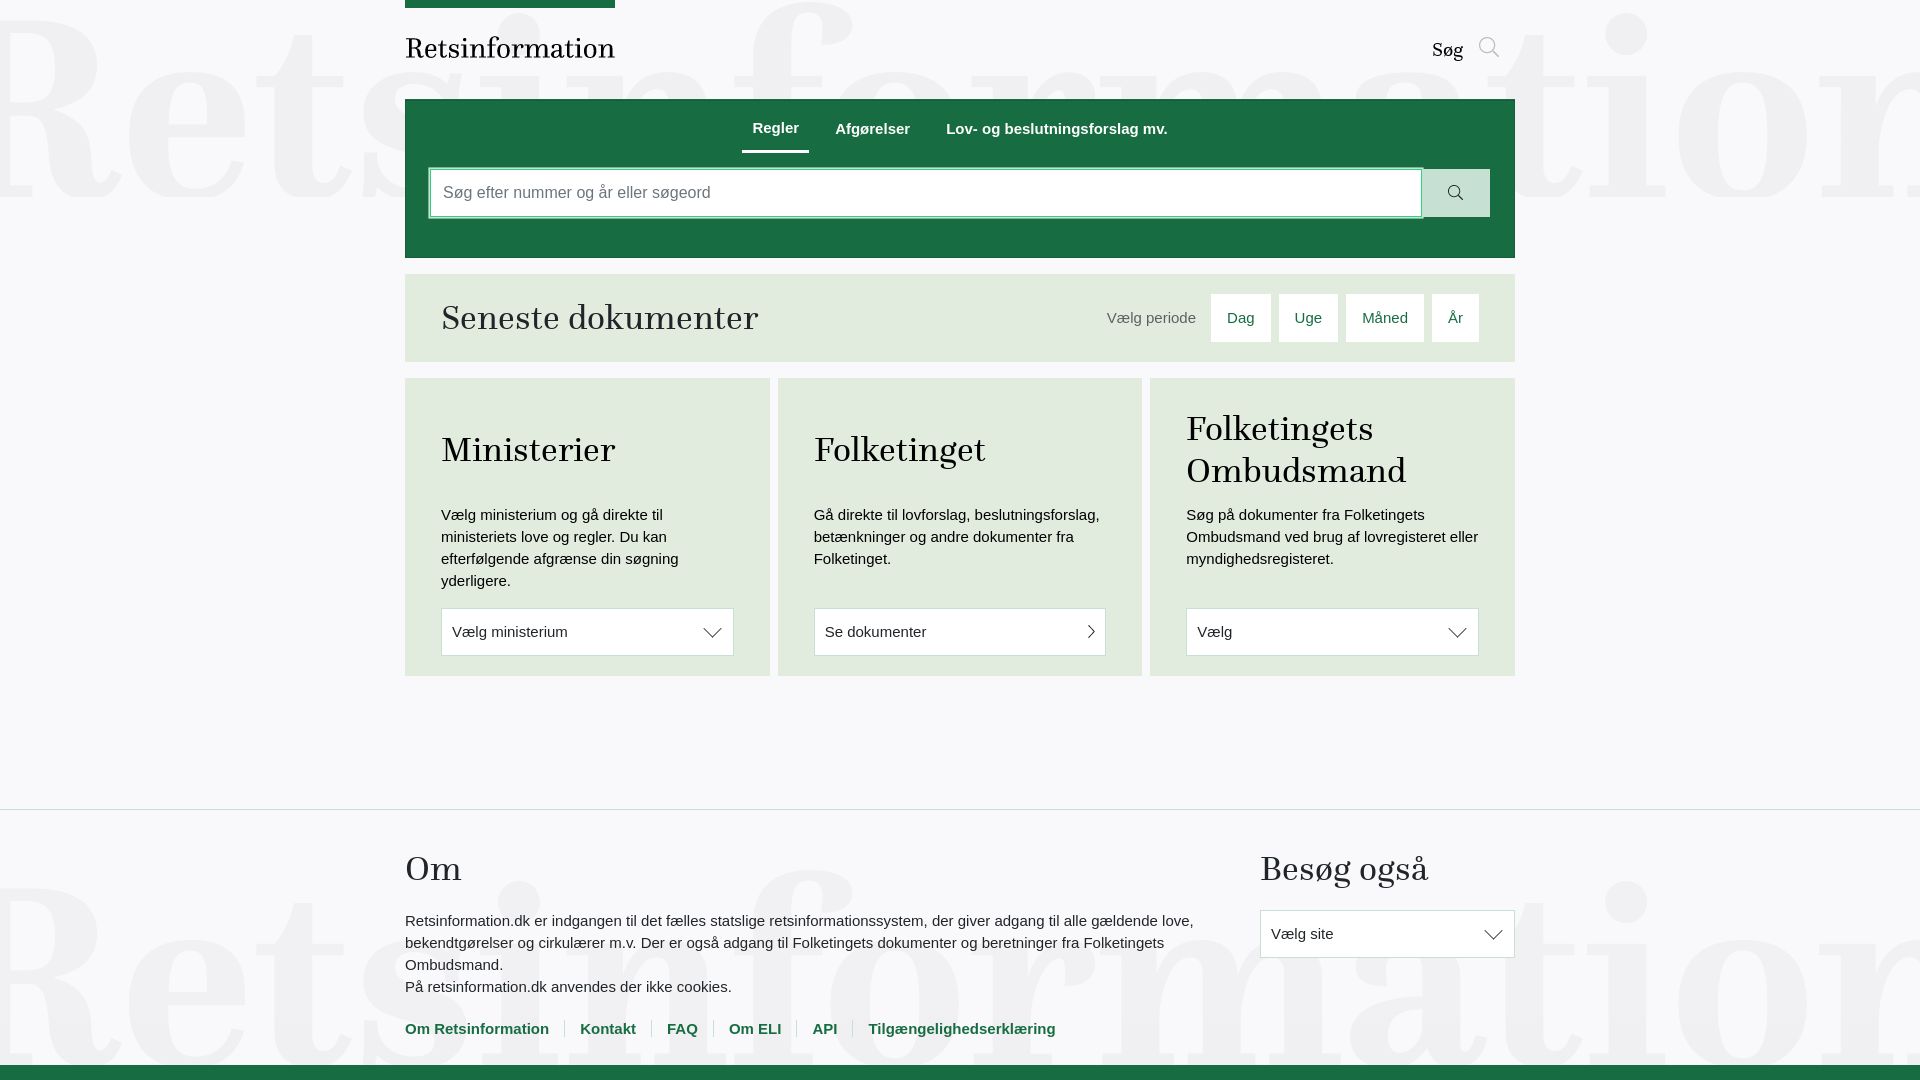 Stato del sito web retsinformation.dk è   ONLINE